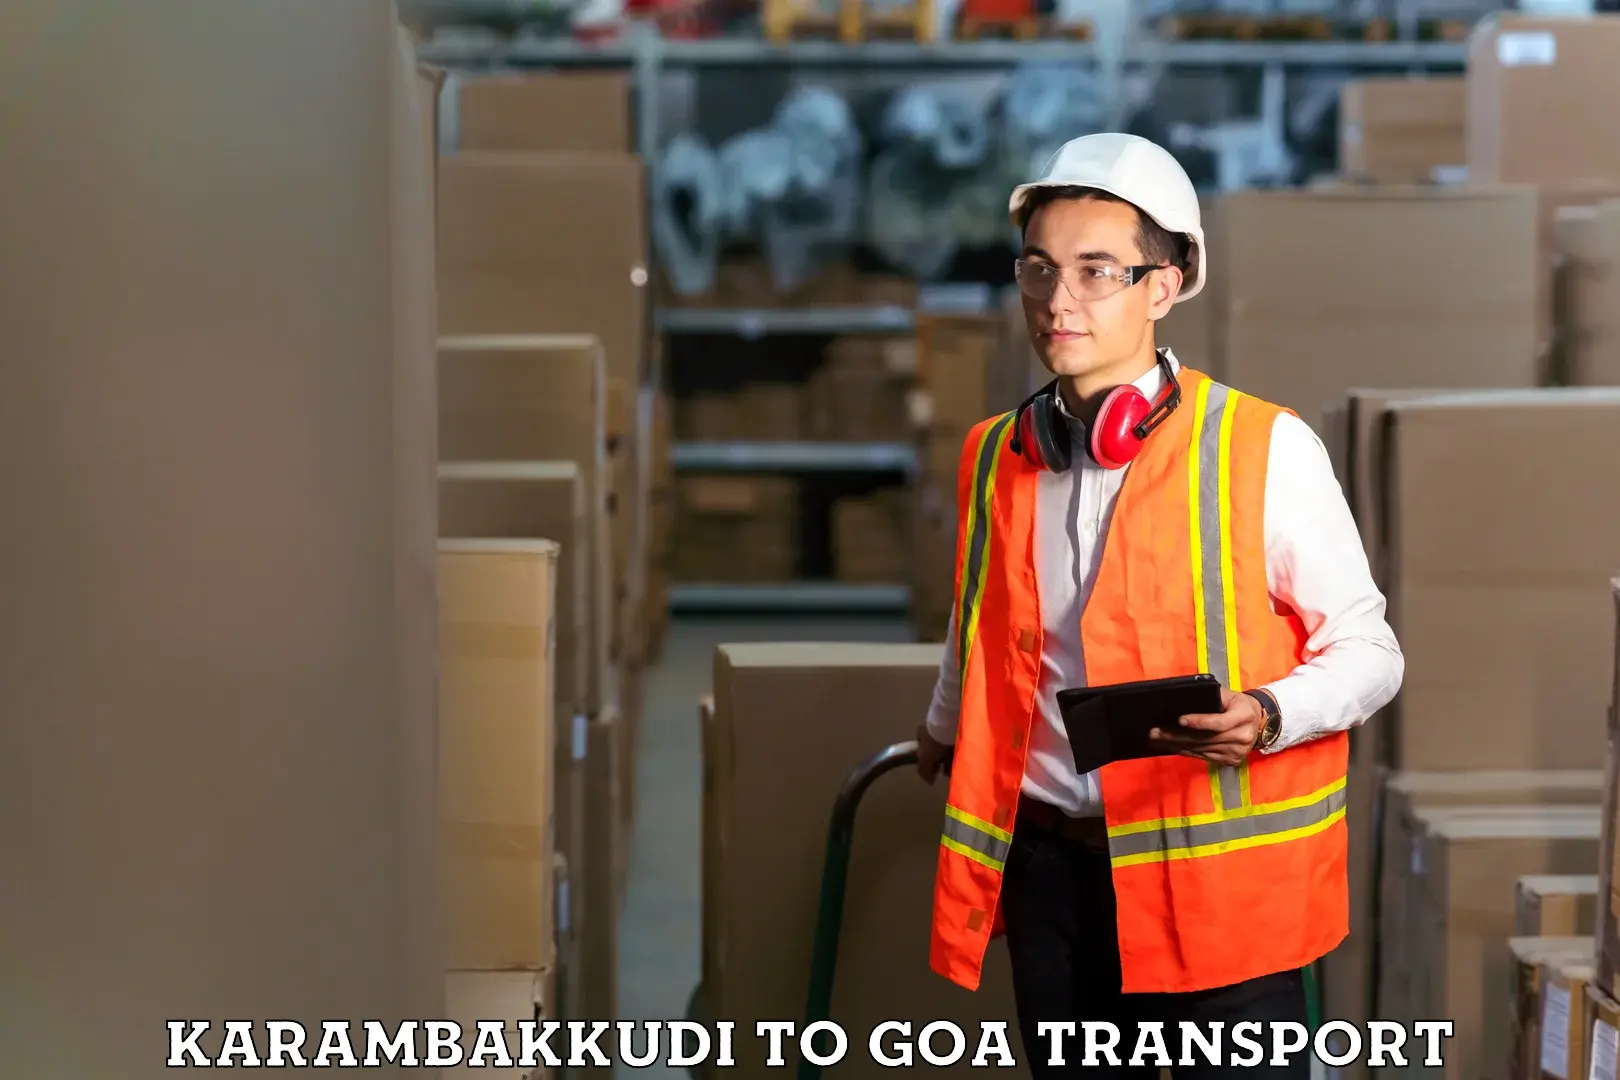 Two wheeler transport services Karambakkudi to South Goa